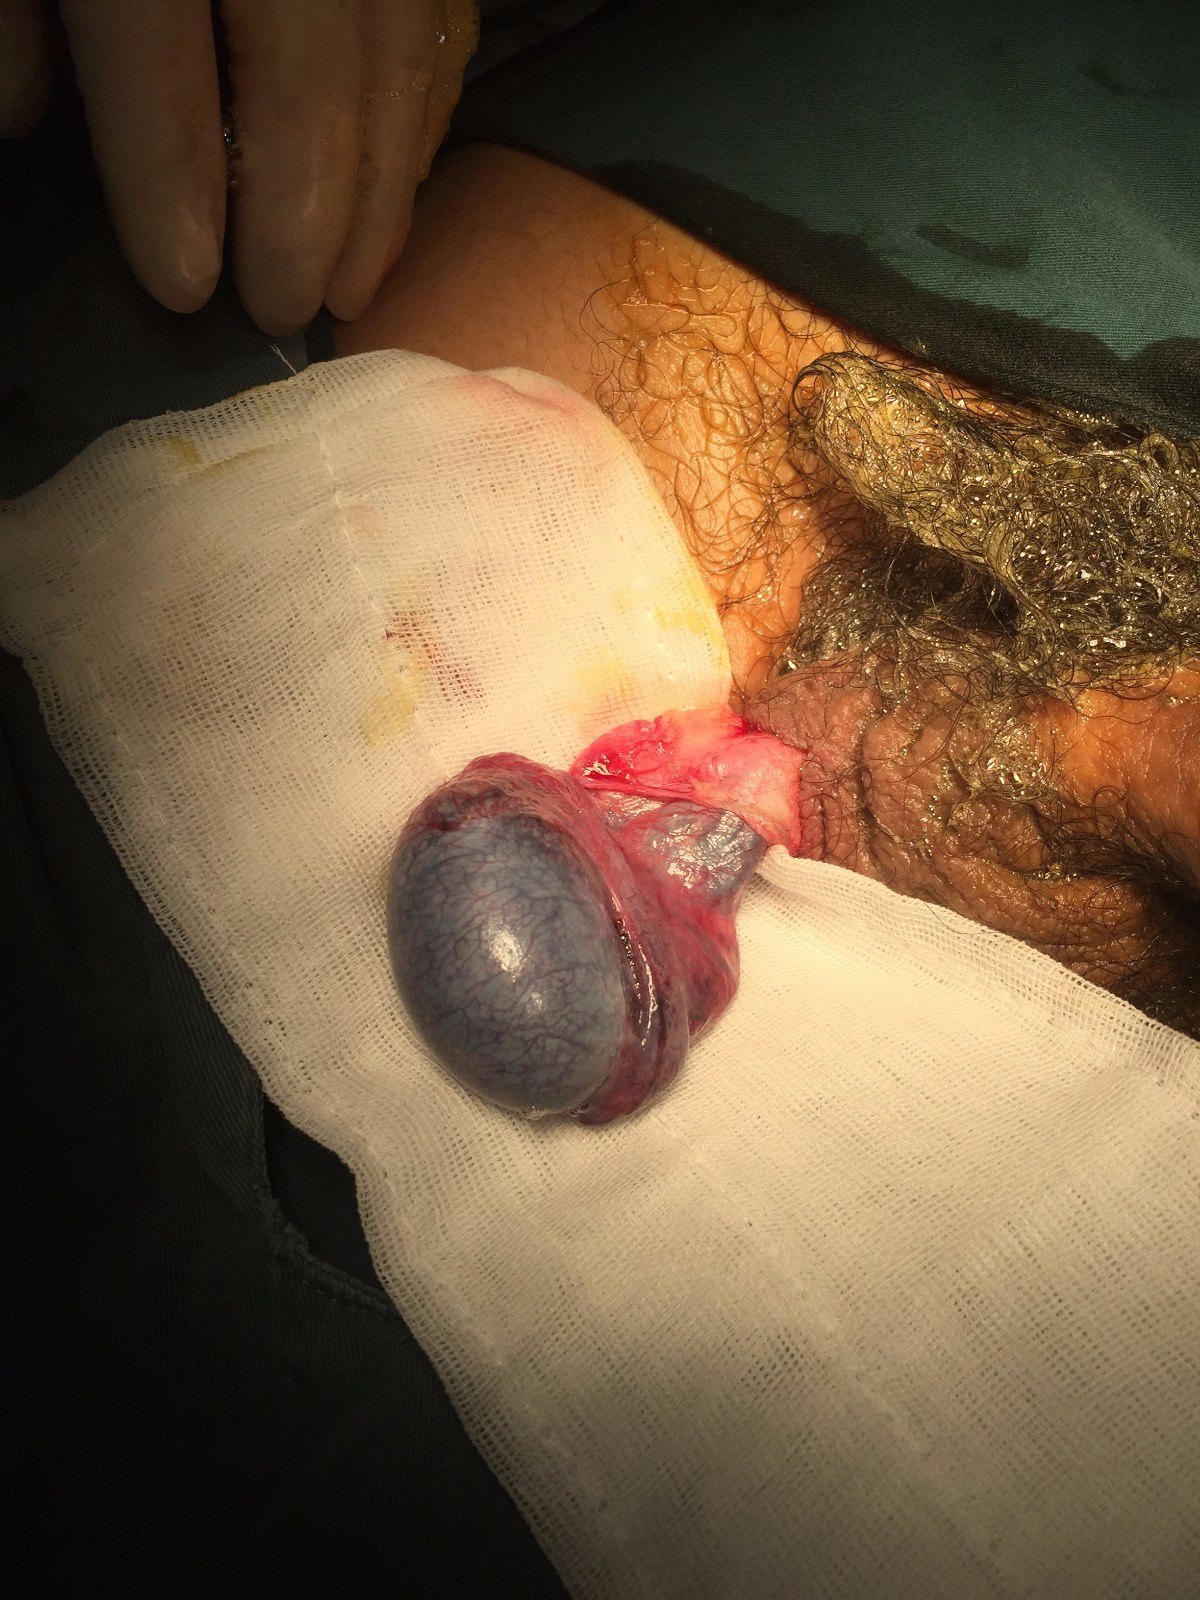 「蛋蛋」红肿疼痛,不要在家耽搁 这是一例"睾丸扭转"的病例:15岁少年